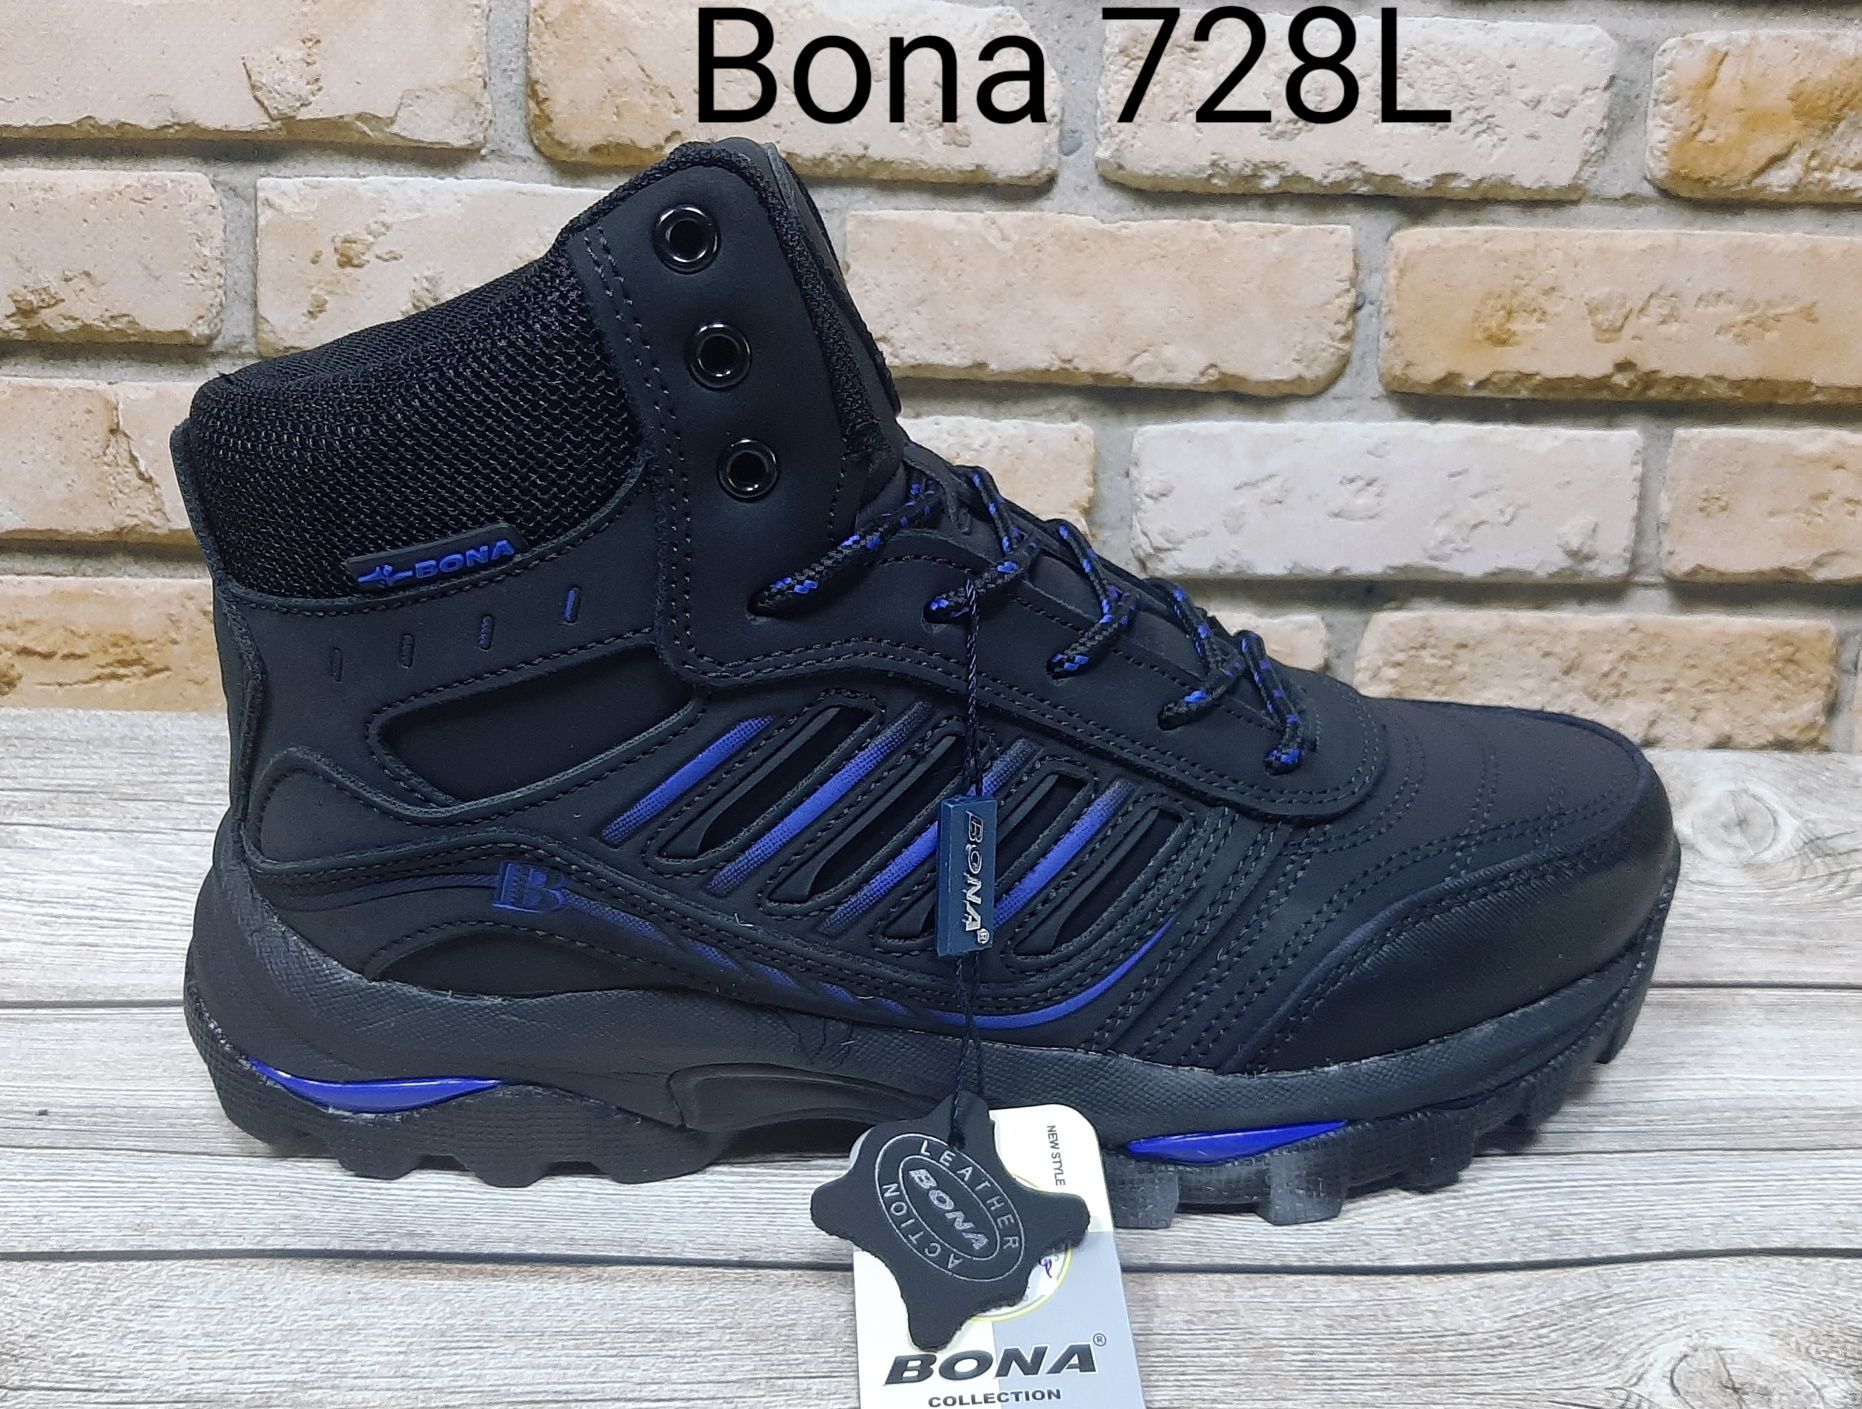 Зимние кроссовки Bona 728L для мальчика 36-41р.